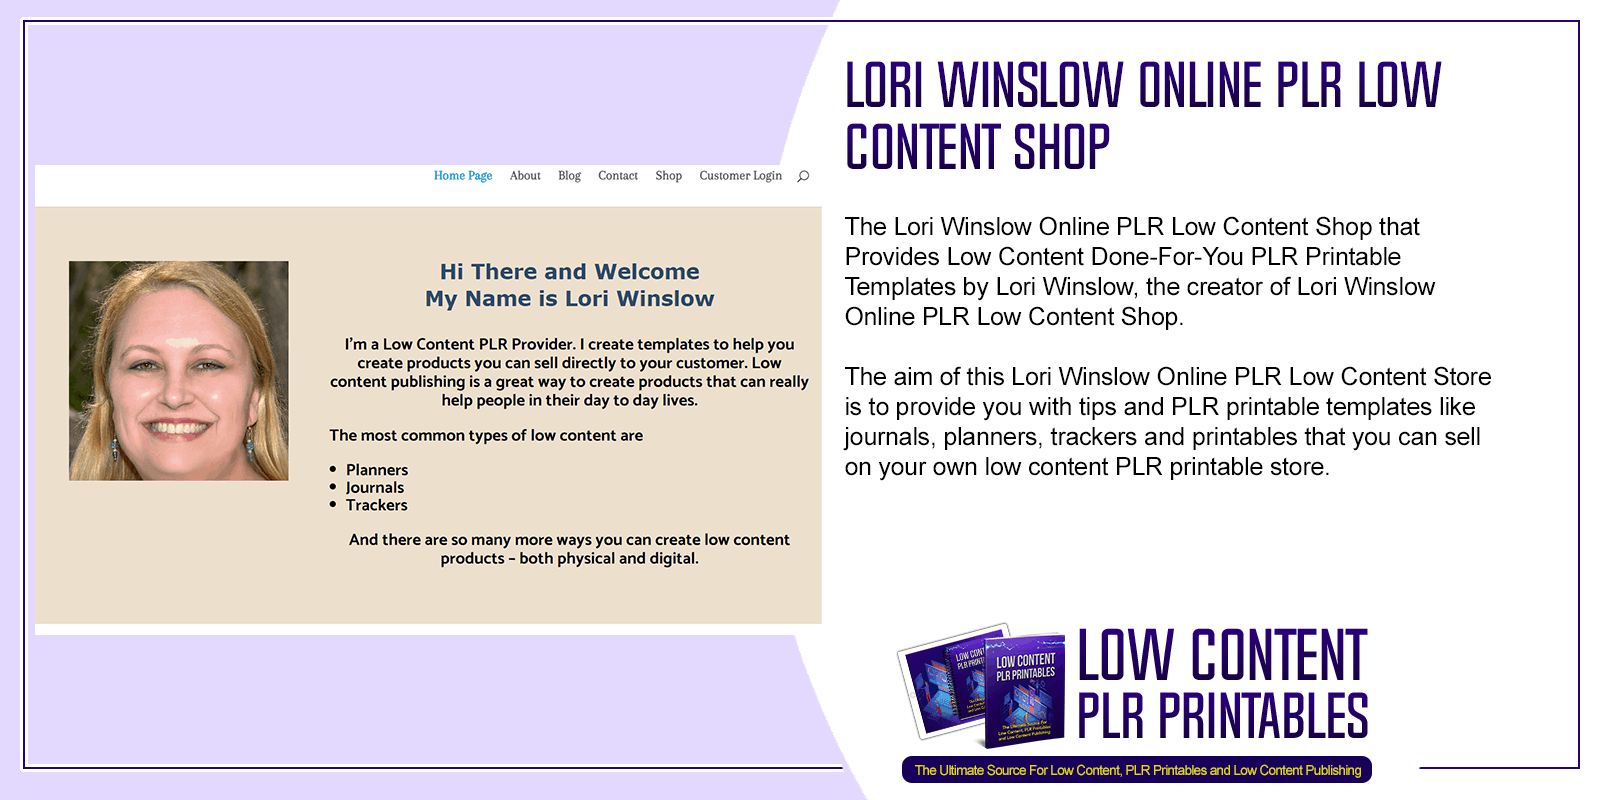 Lori Winslow Online PLR Low Content Shop